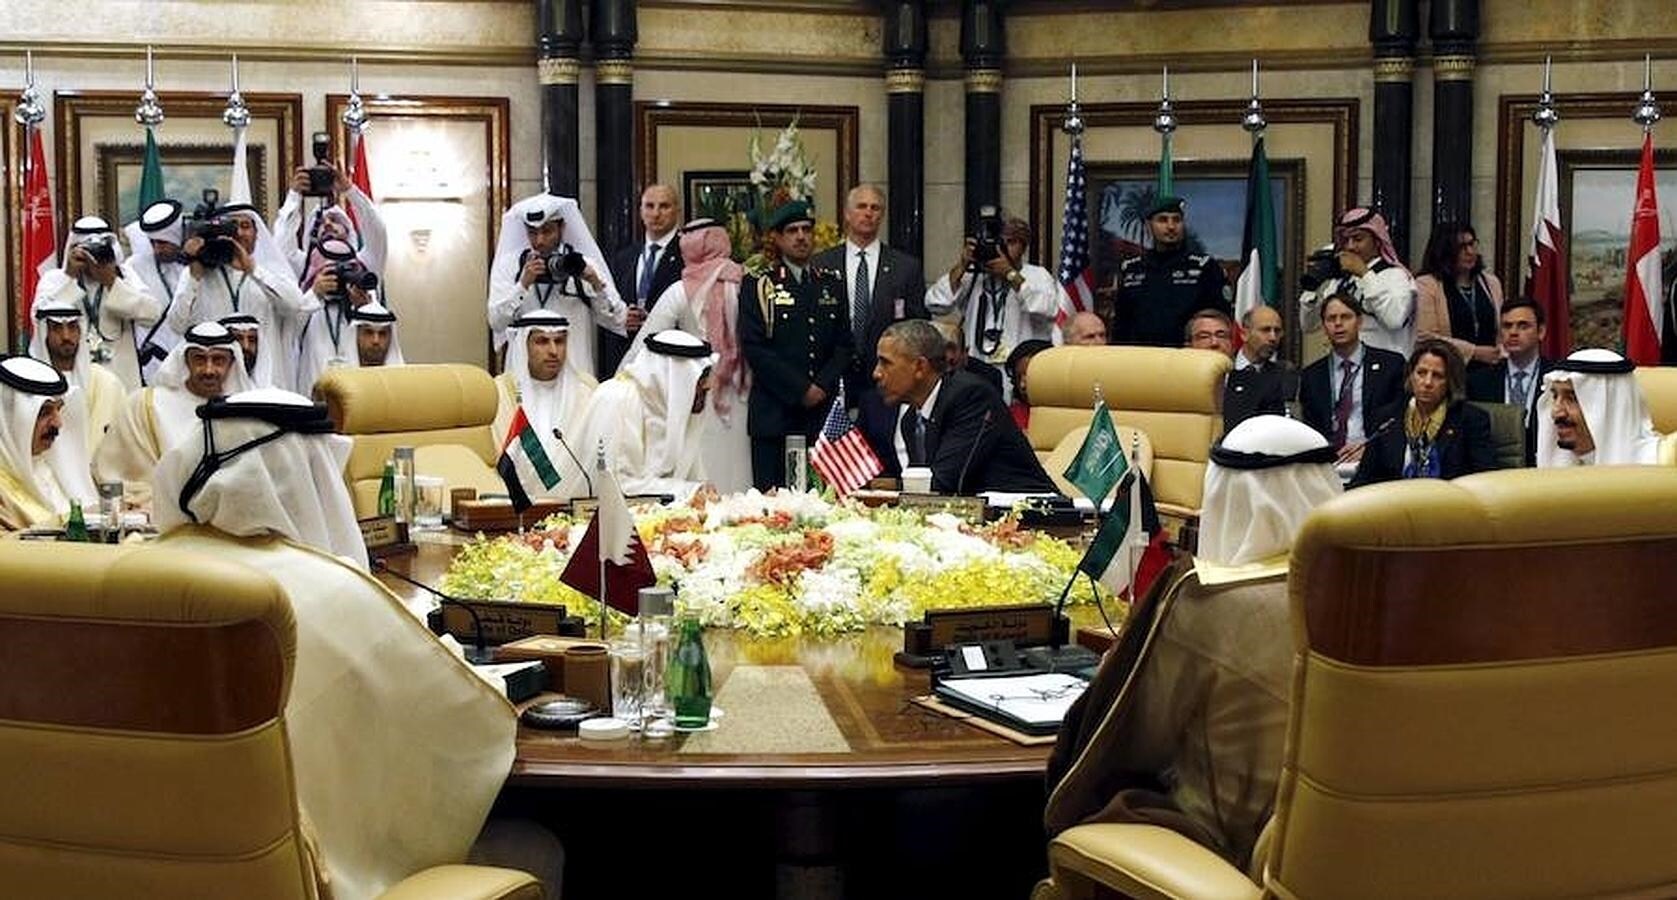 Obama conversa con Sheikh Mohammed bin Zayed al-Nahyan, el príncipe de Abu Dhabi. El presidente ha matizado que, pese al acuerdo nuclear, Irán sigue siendo una preocupación